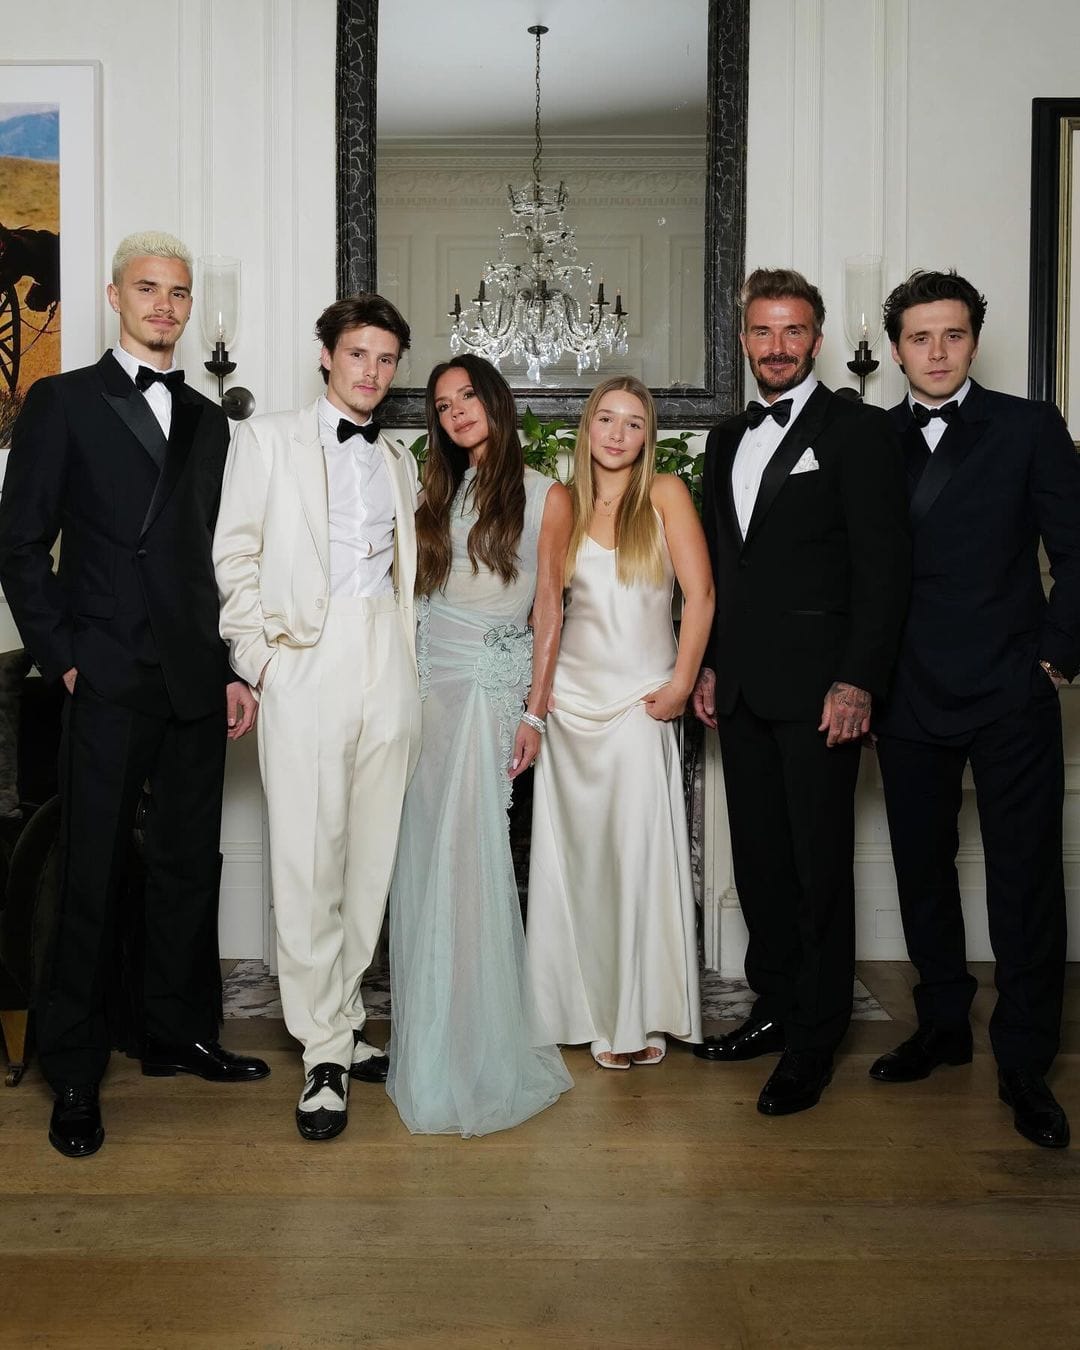 Romeo, Cruz, Victoria, Harper, David und Brooklyn Beckham posieren für ein Familienfoto.